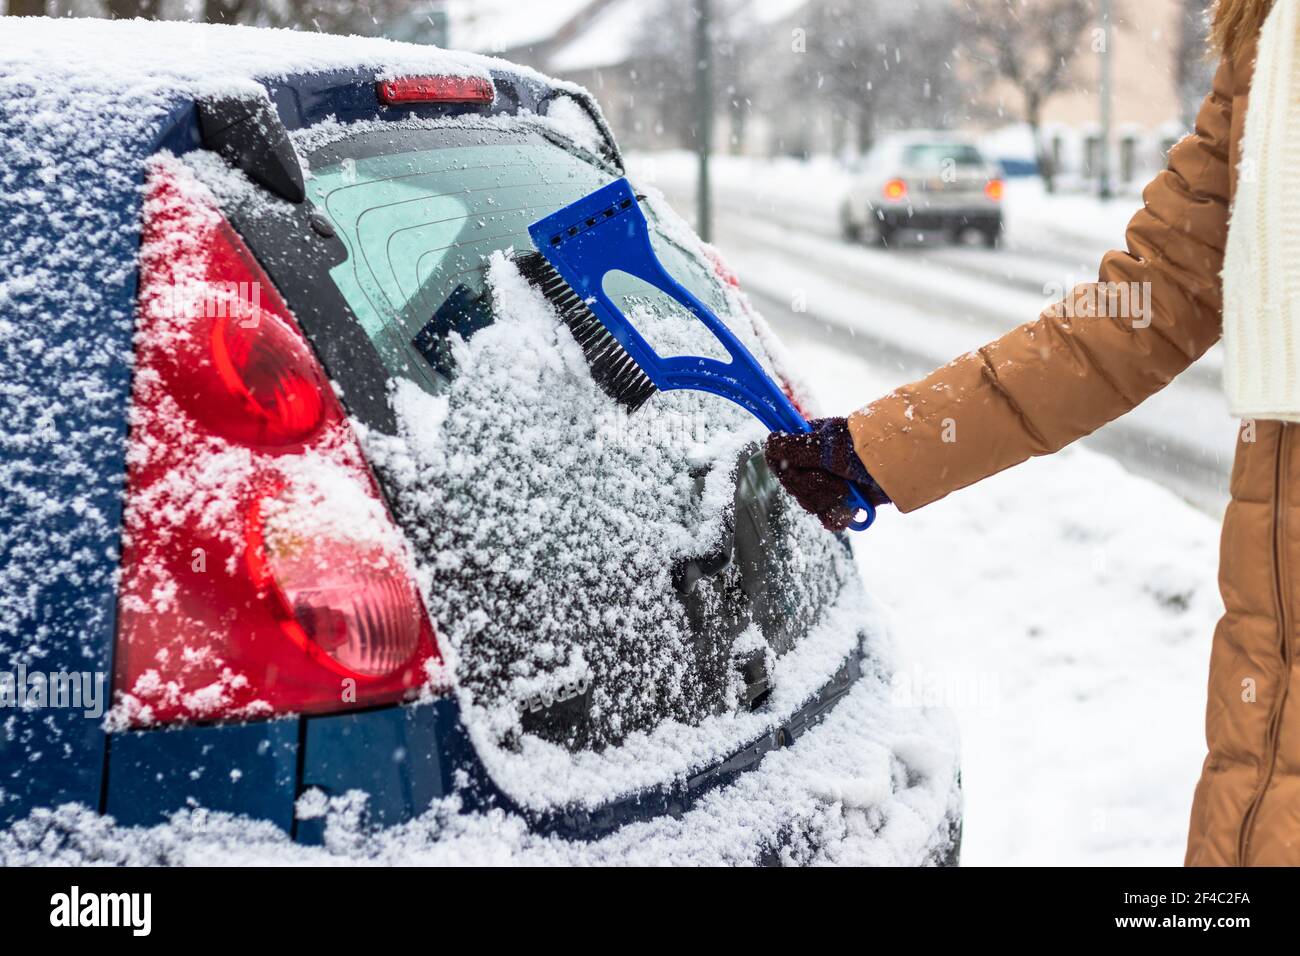 Entfernen von Schnee aus dem Autofenster auf der Straße. Reinigung des  Autos während des Schnees im Winter Stockfotografie - Alamy